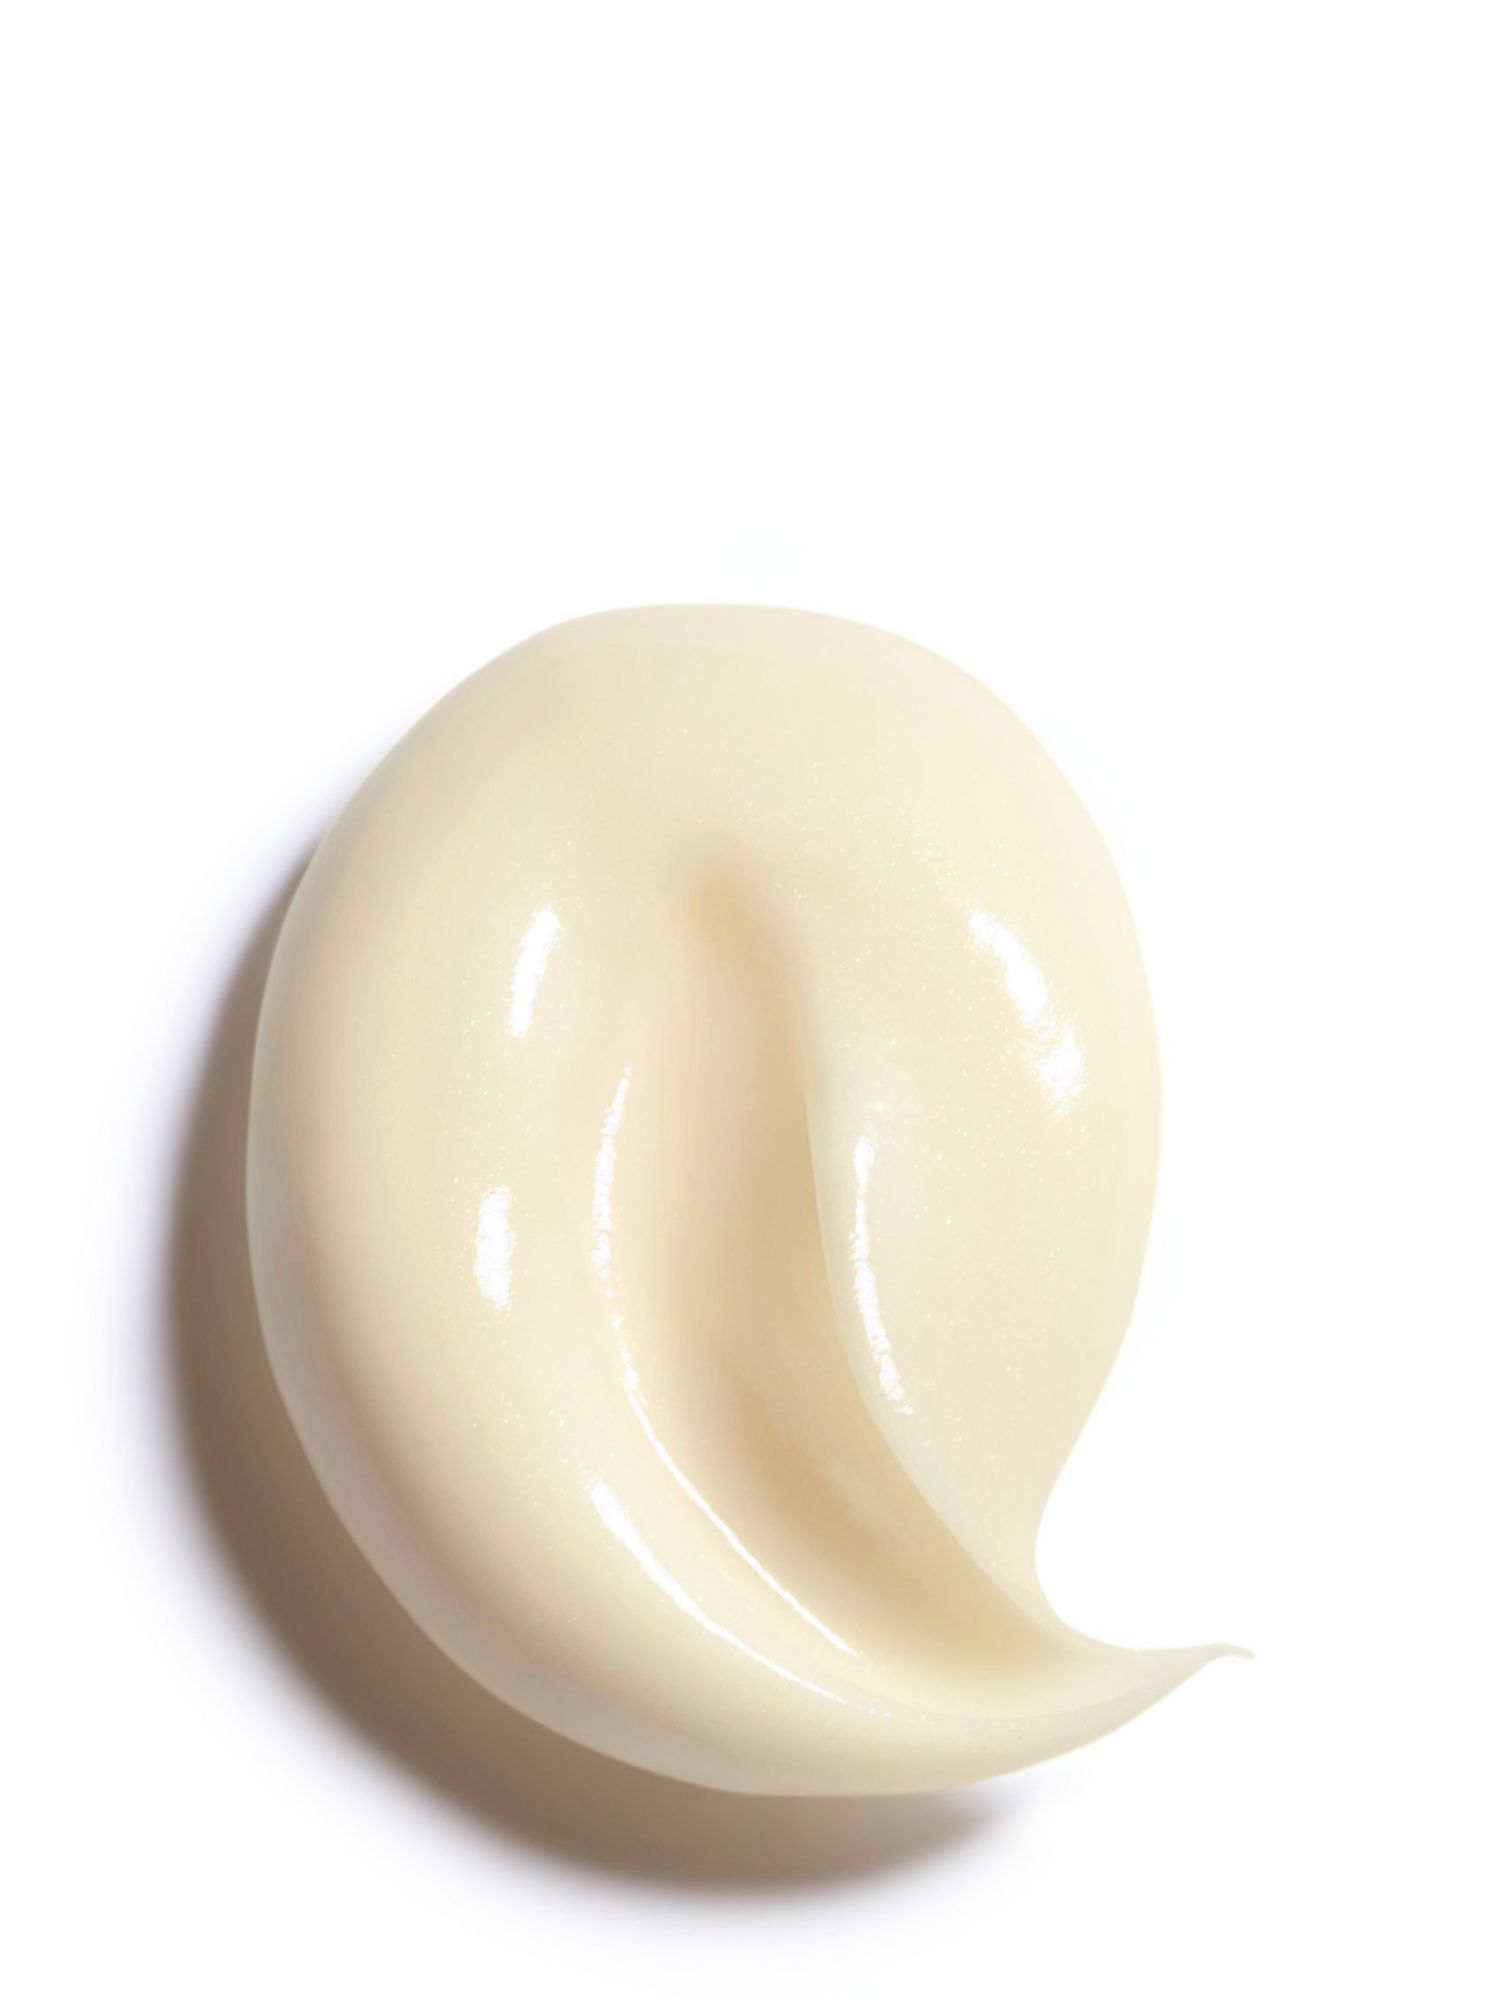 CHANEL Sublimage La Crème Yeux, La Recharge Ultimate Eye Cream Refill Jar,  15g at John Lewis & Partners